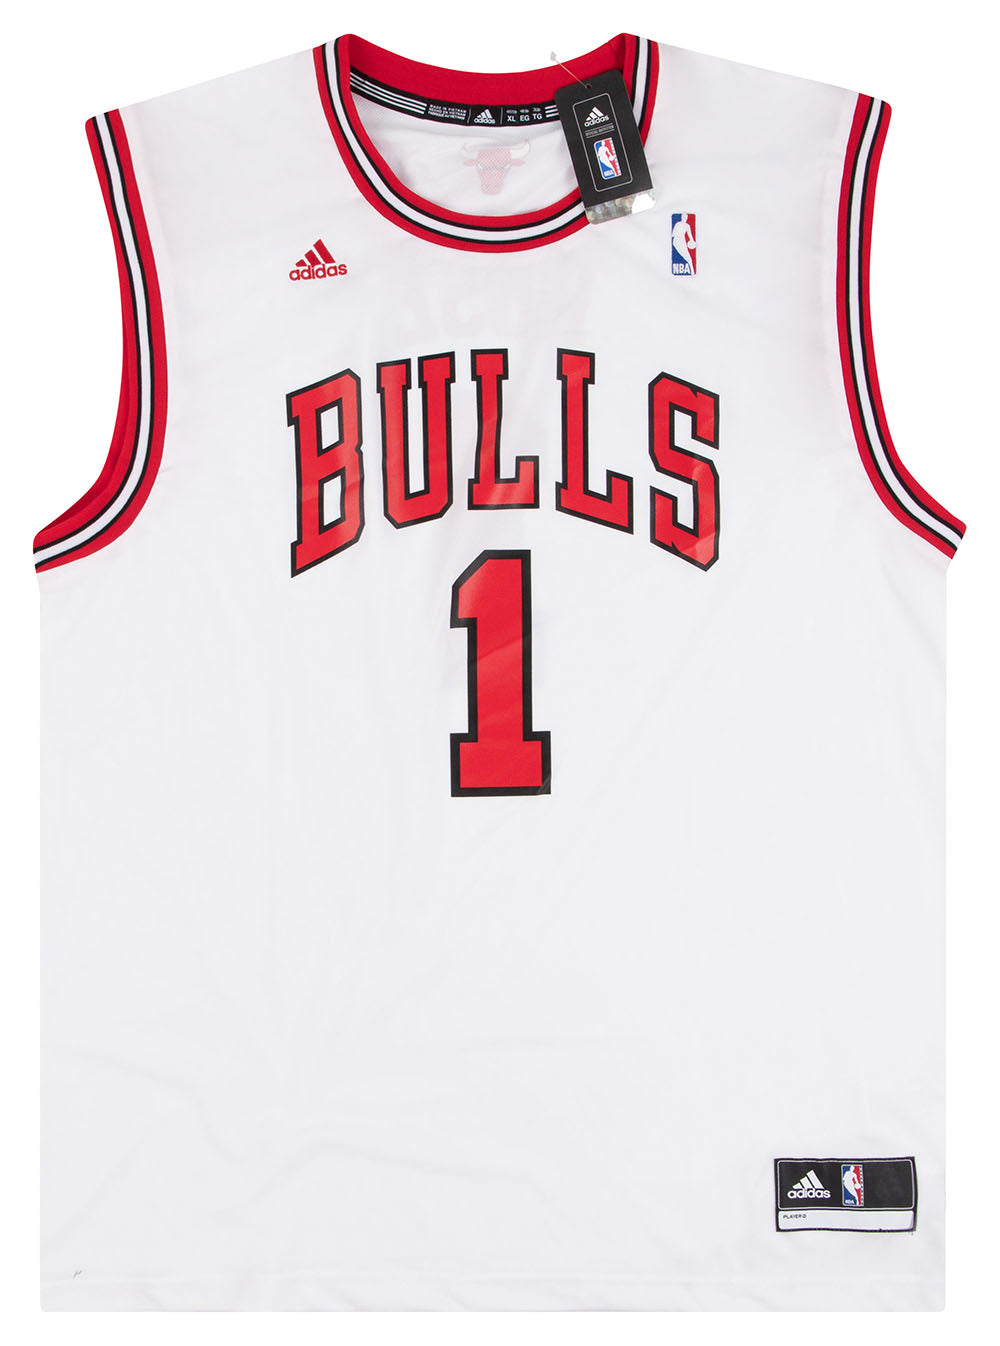 Chicago Bulls Jersey Derrick Rose 1 Adidas Original NBA Shirt Basketball  Vest